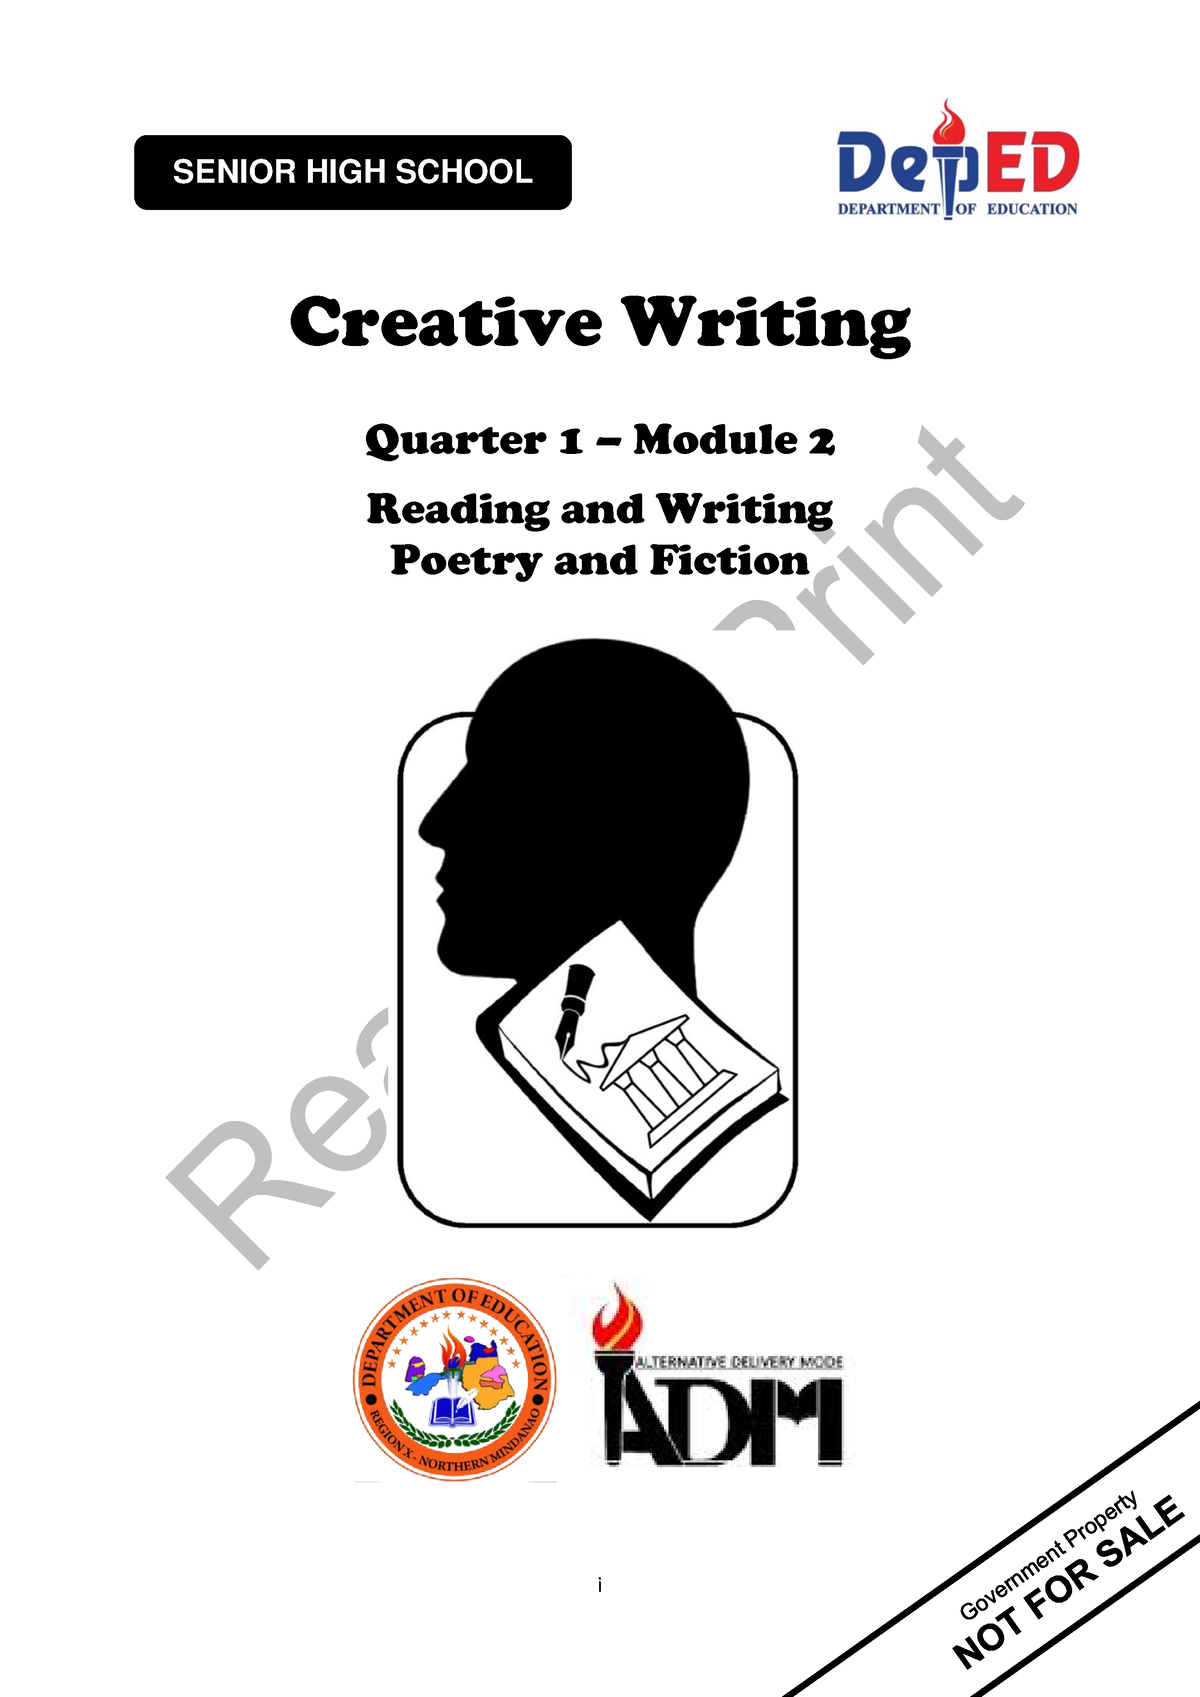 creative writing q4 module 1